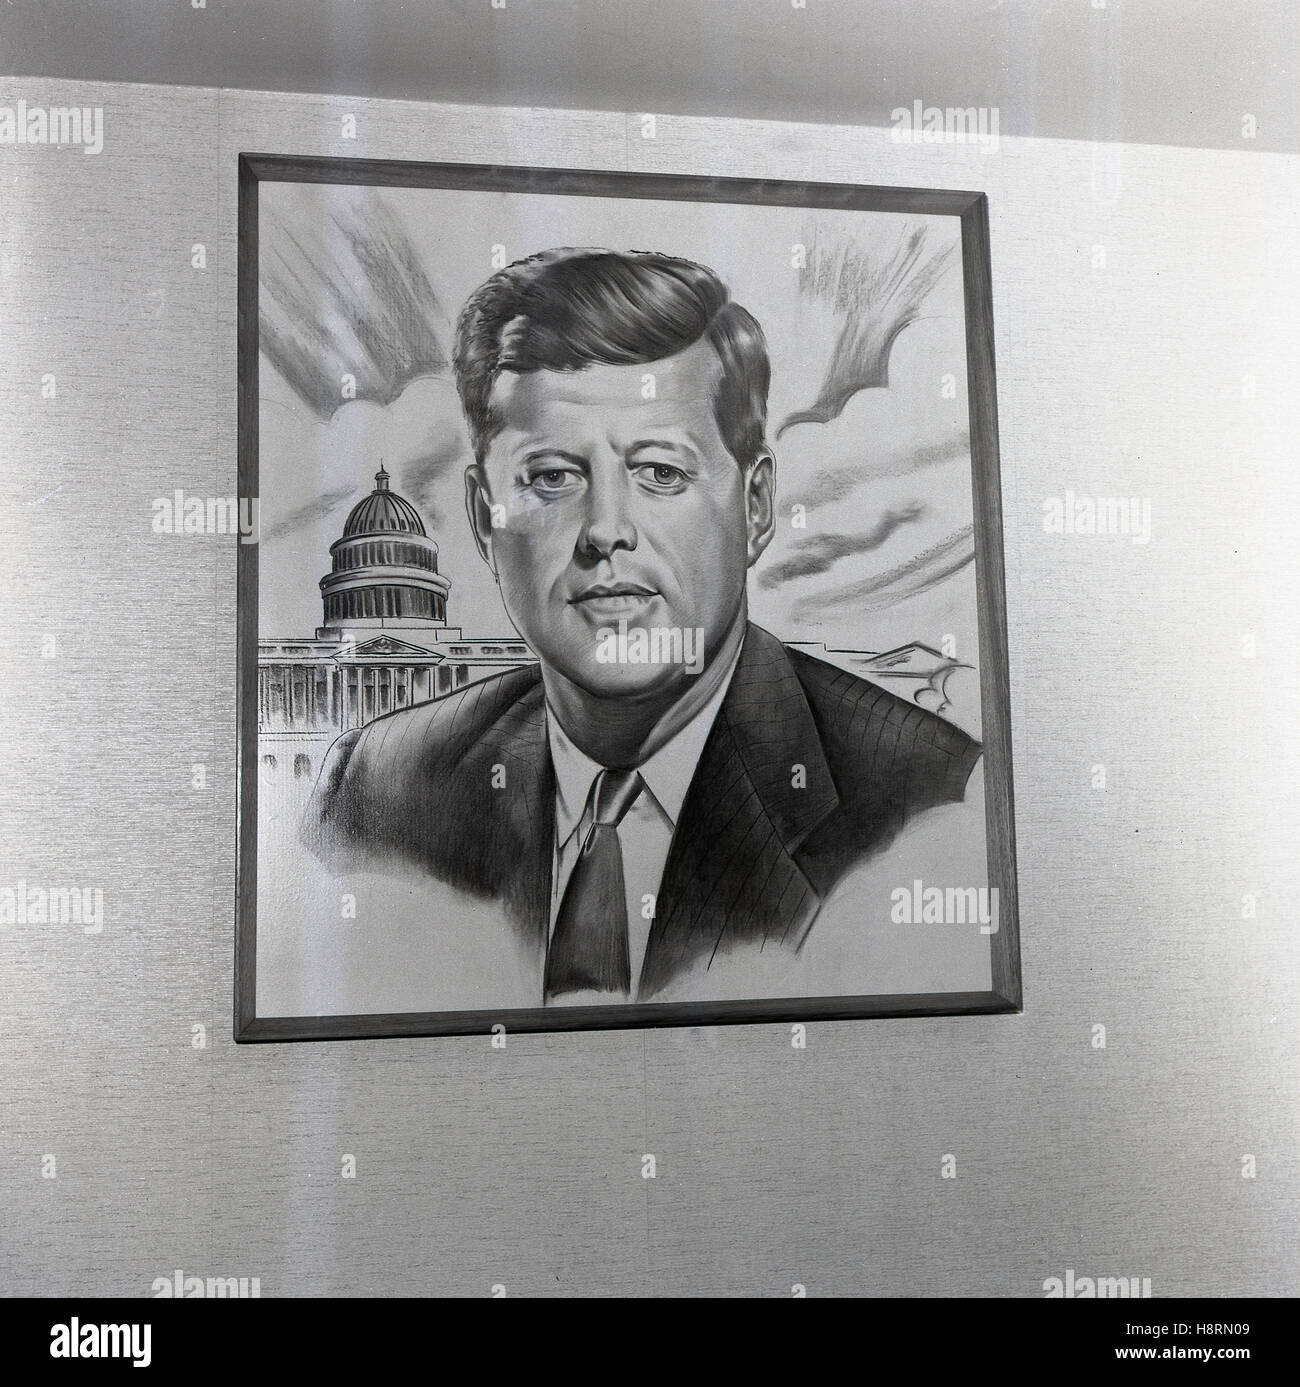 1965, historique, un dessin au crayon du 35ème président américain, John F. Kennedy devant le Capitole, le lieu de rencontre pour les USA le Congrès. L'oeuvre a été sur le mur d'un pub anglais nommé d'après le président. Banque D'Images